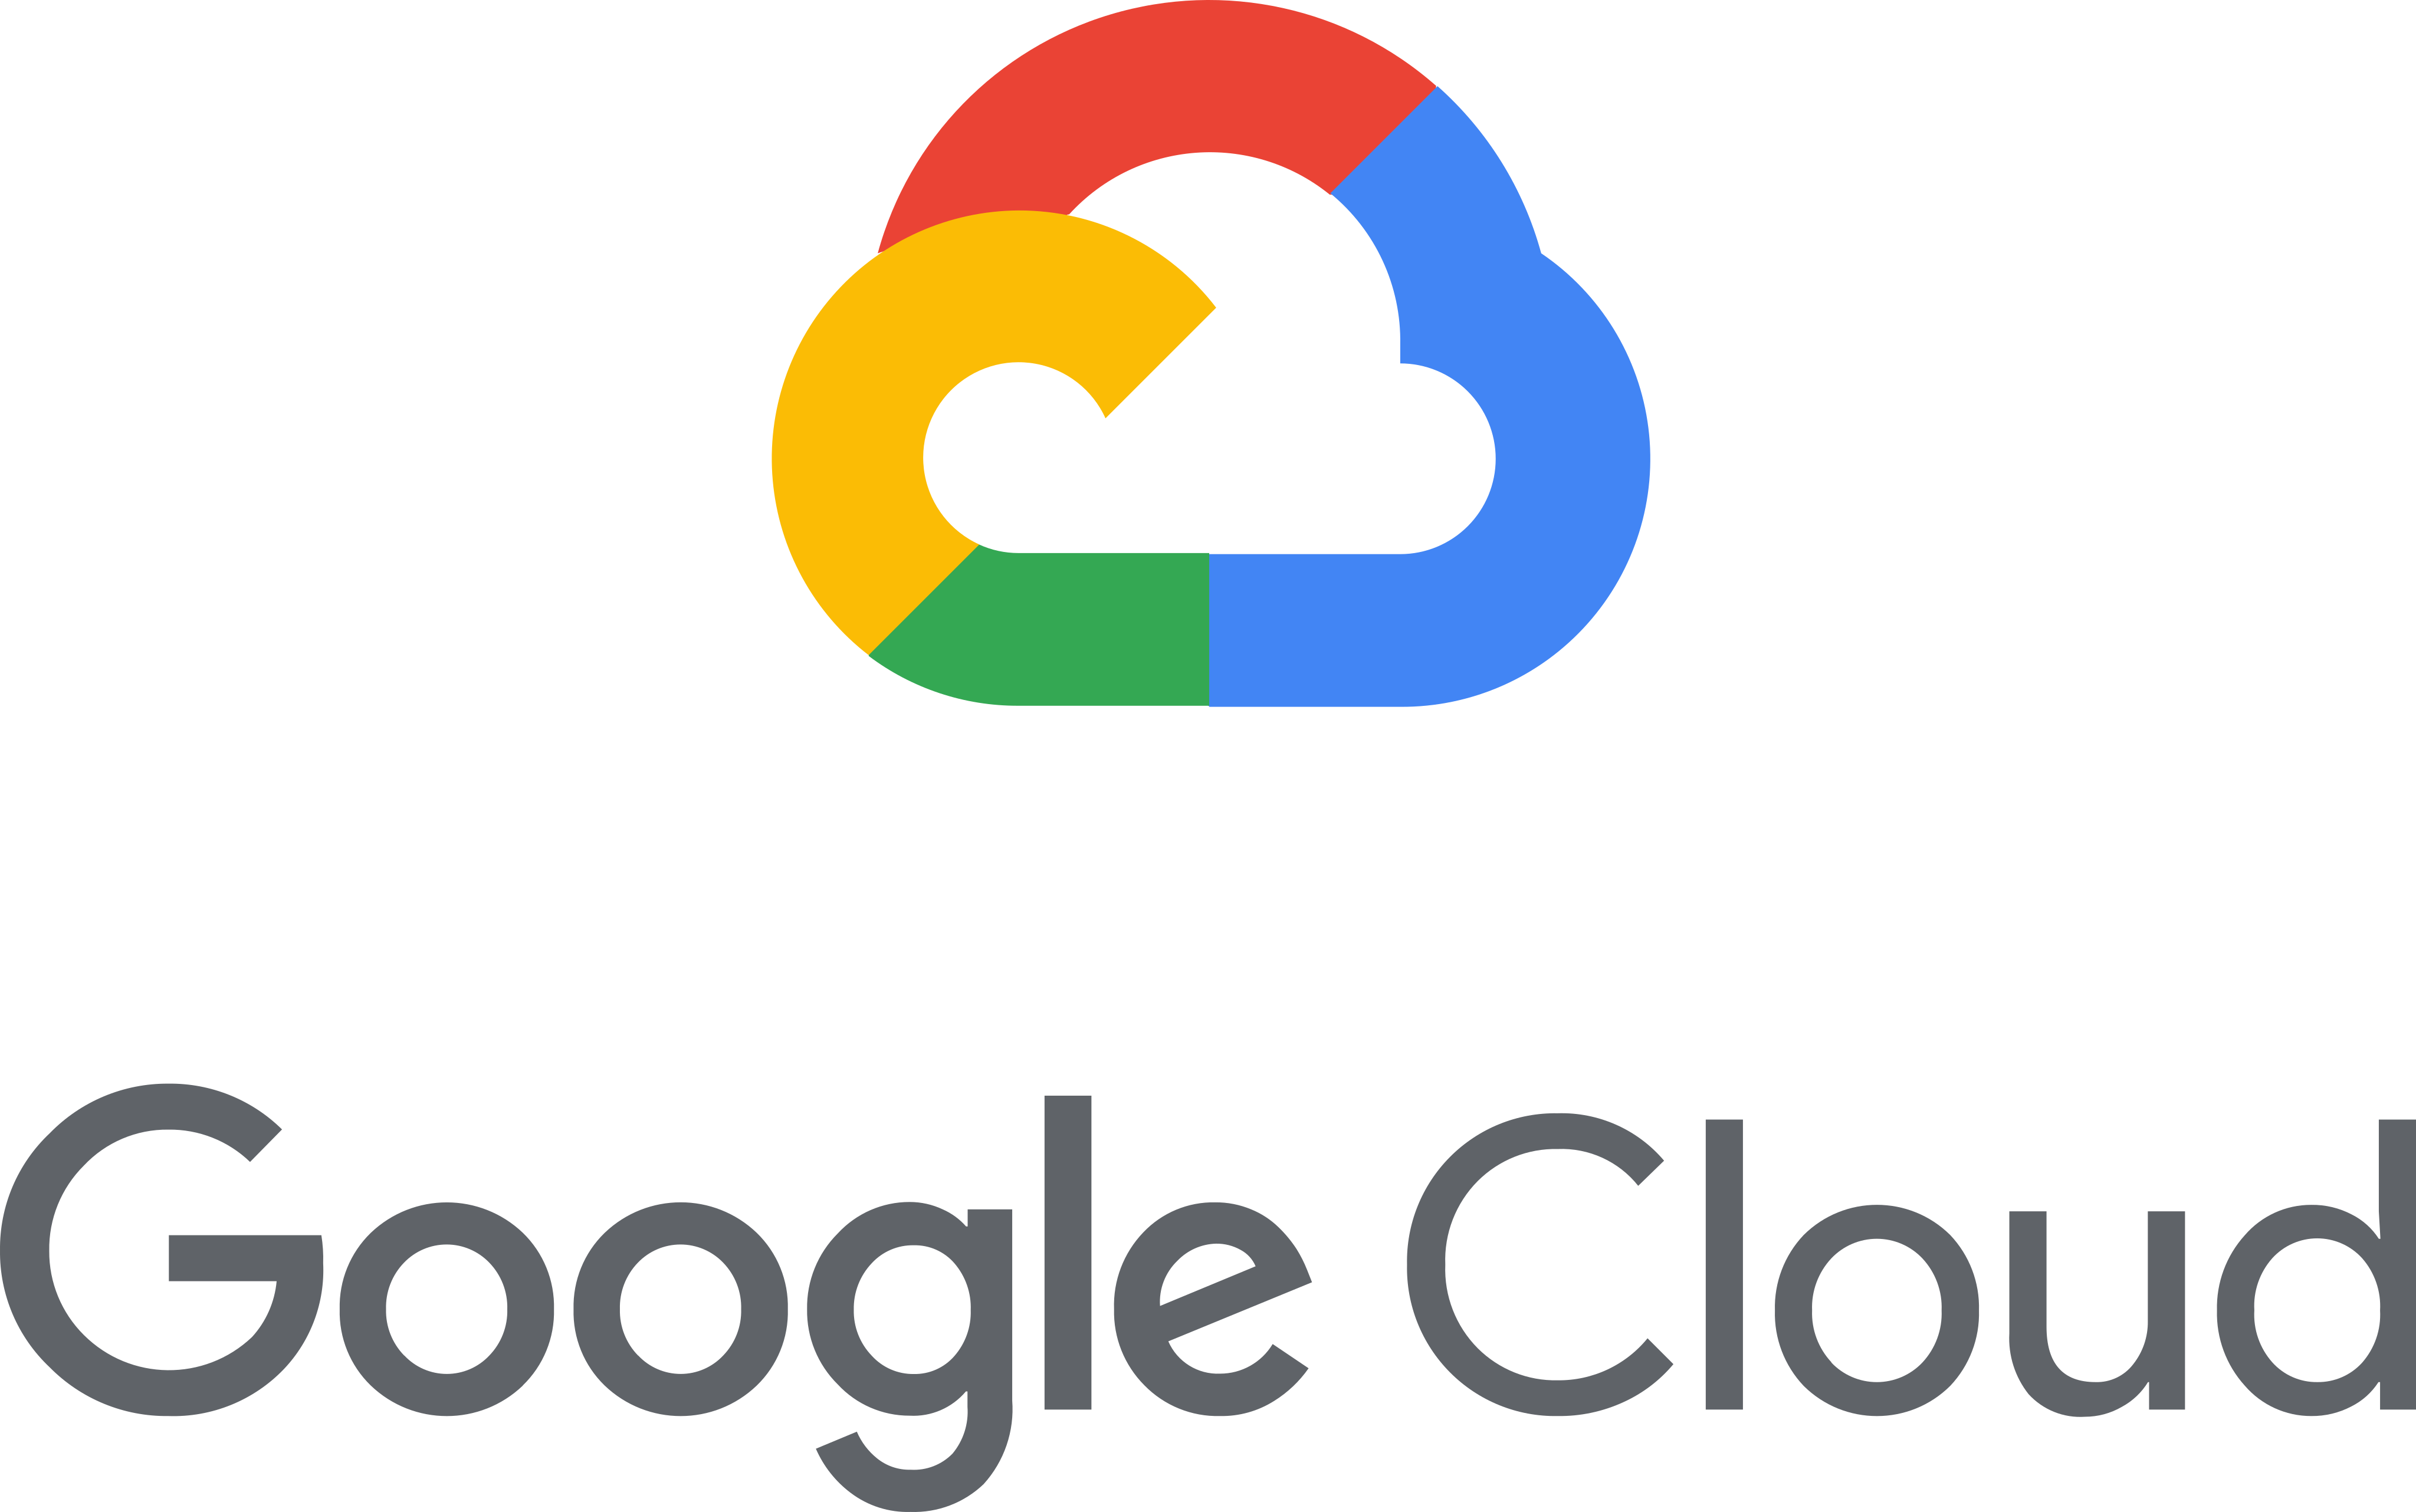 Google Cloud Platform - A Suite of Cloud Computing Services